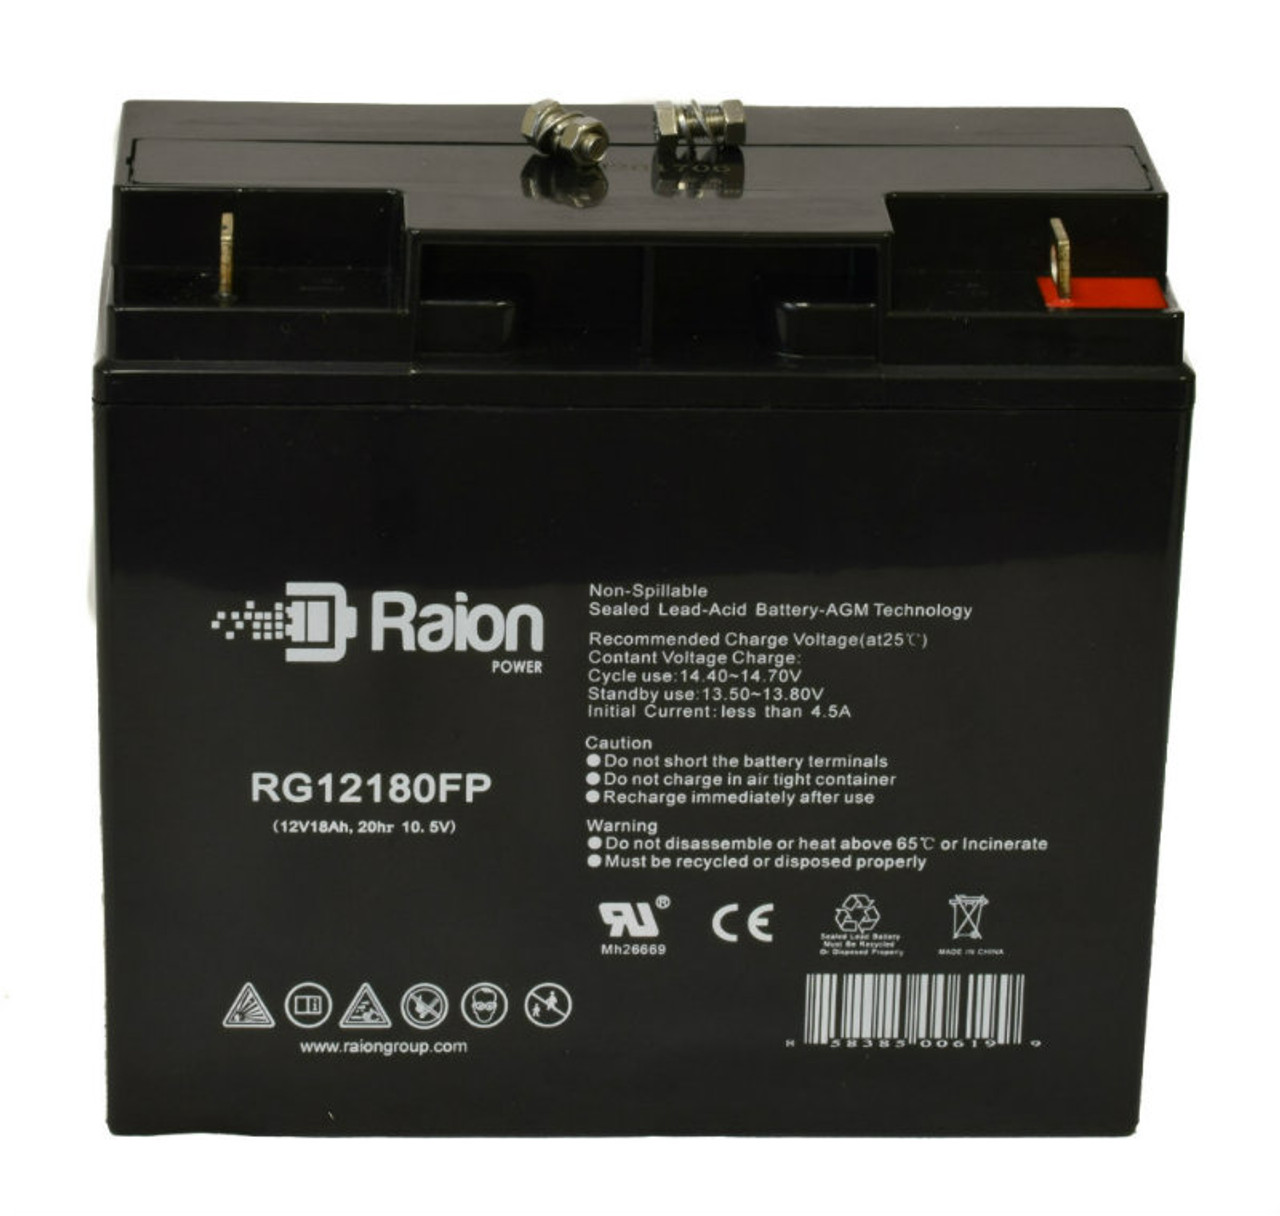 Raion Power RG12180FP 12V 18Ah Lead Acid Battery for Volt Canada Tonka Mobility